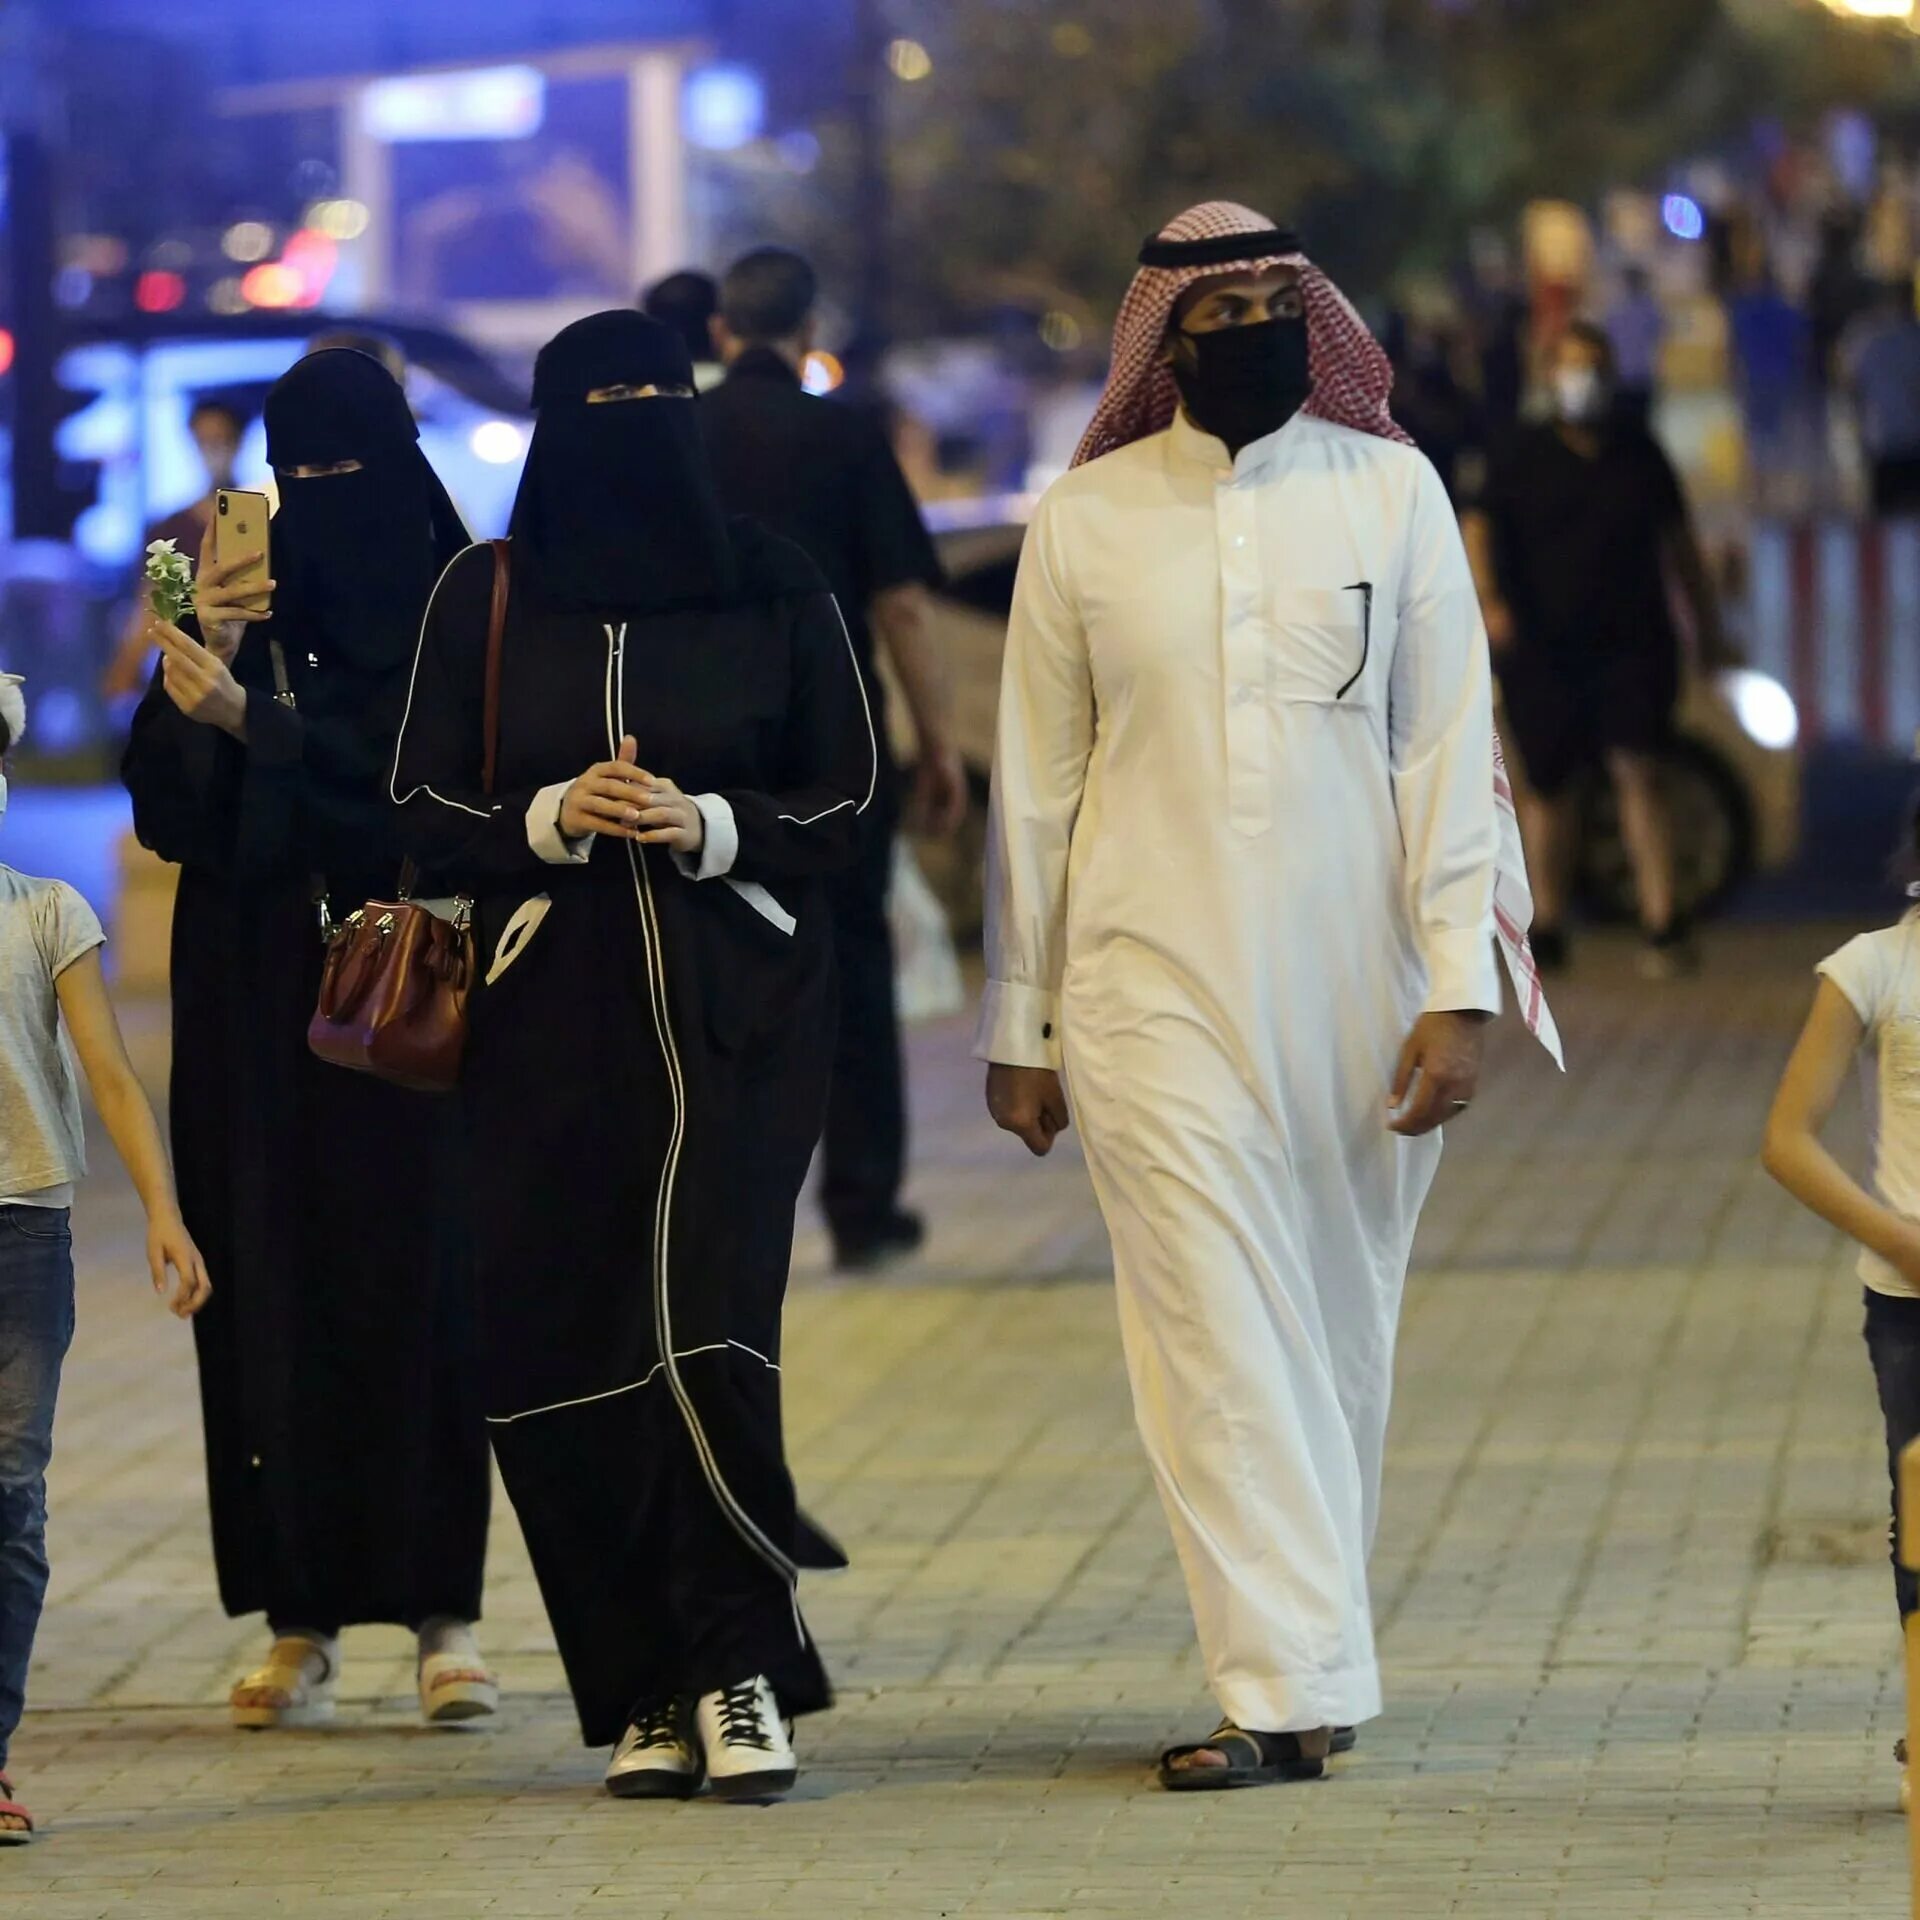 Полиция нравов Саудовской Аравии. Хэллоуин в Саудовской Аравии. Католицизм в Саудовской Аравии. Саудовская аравия показатели